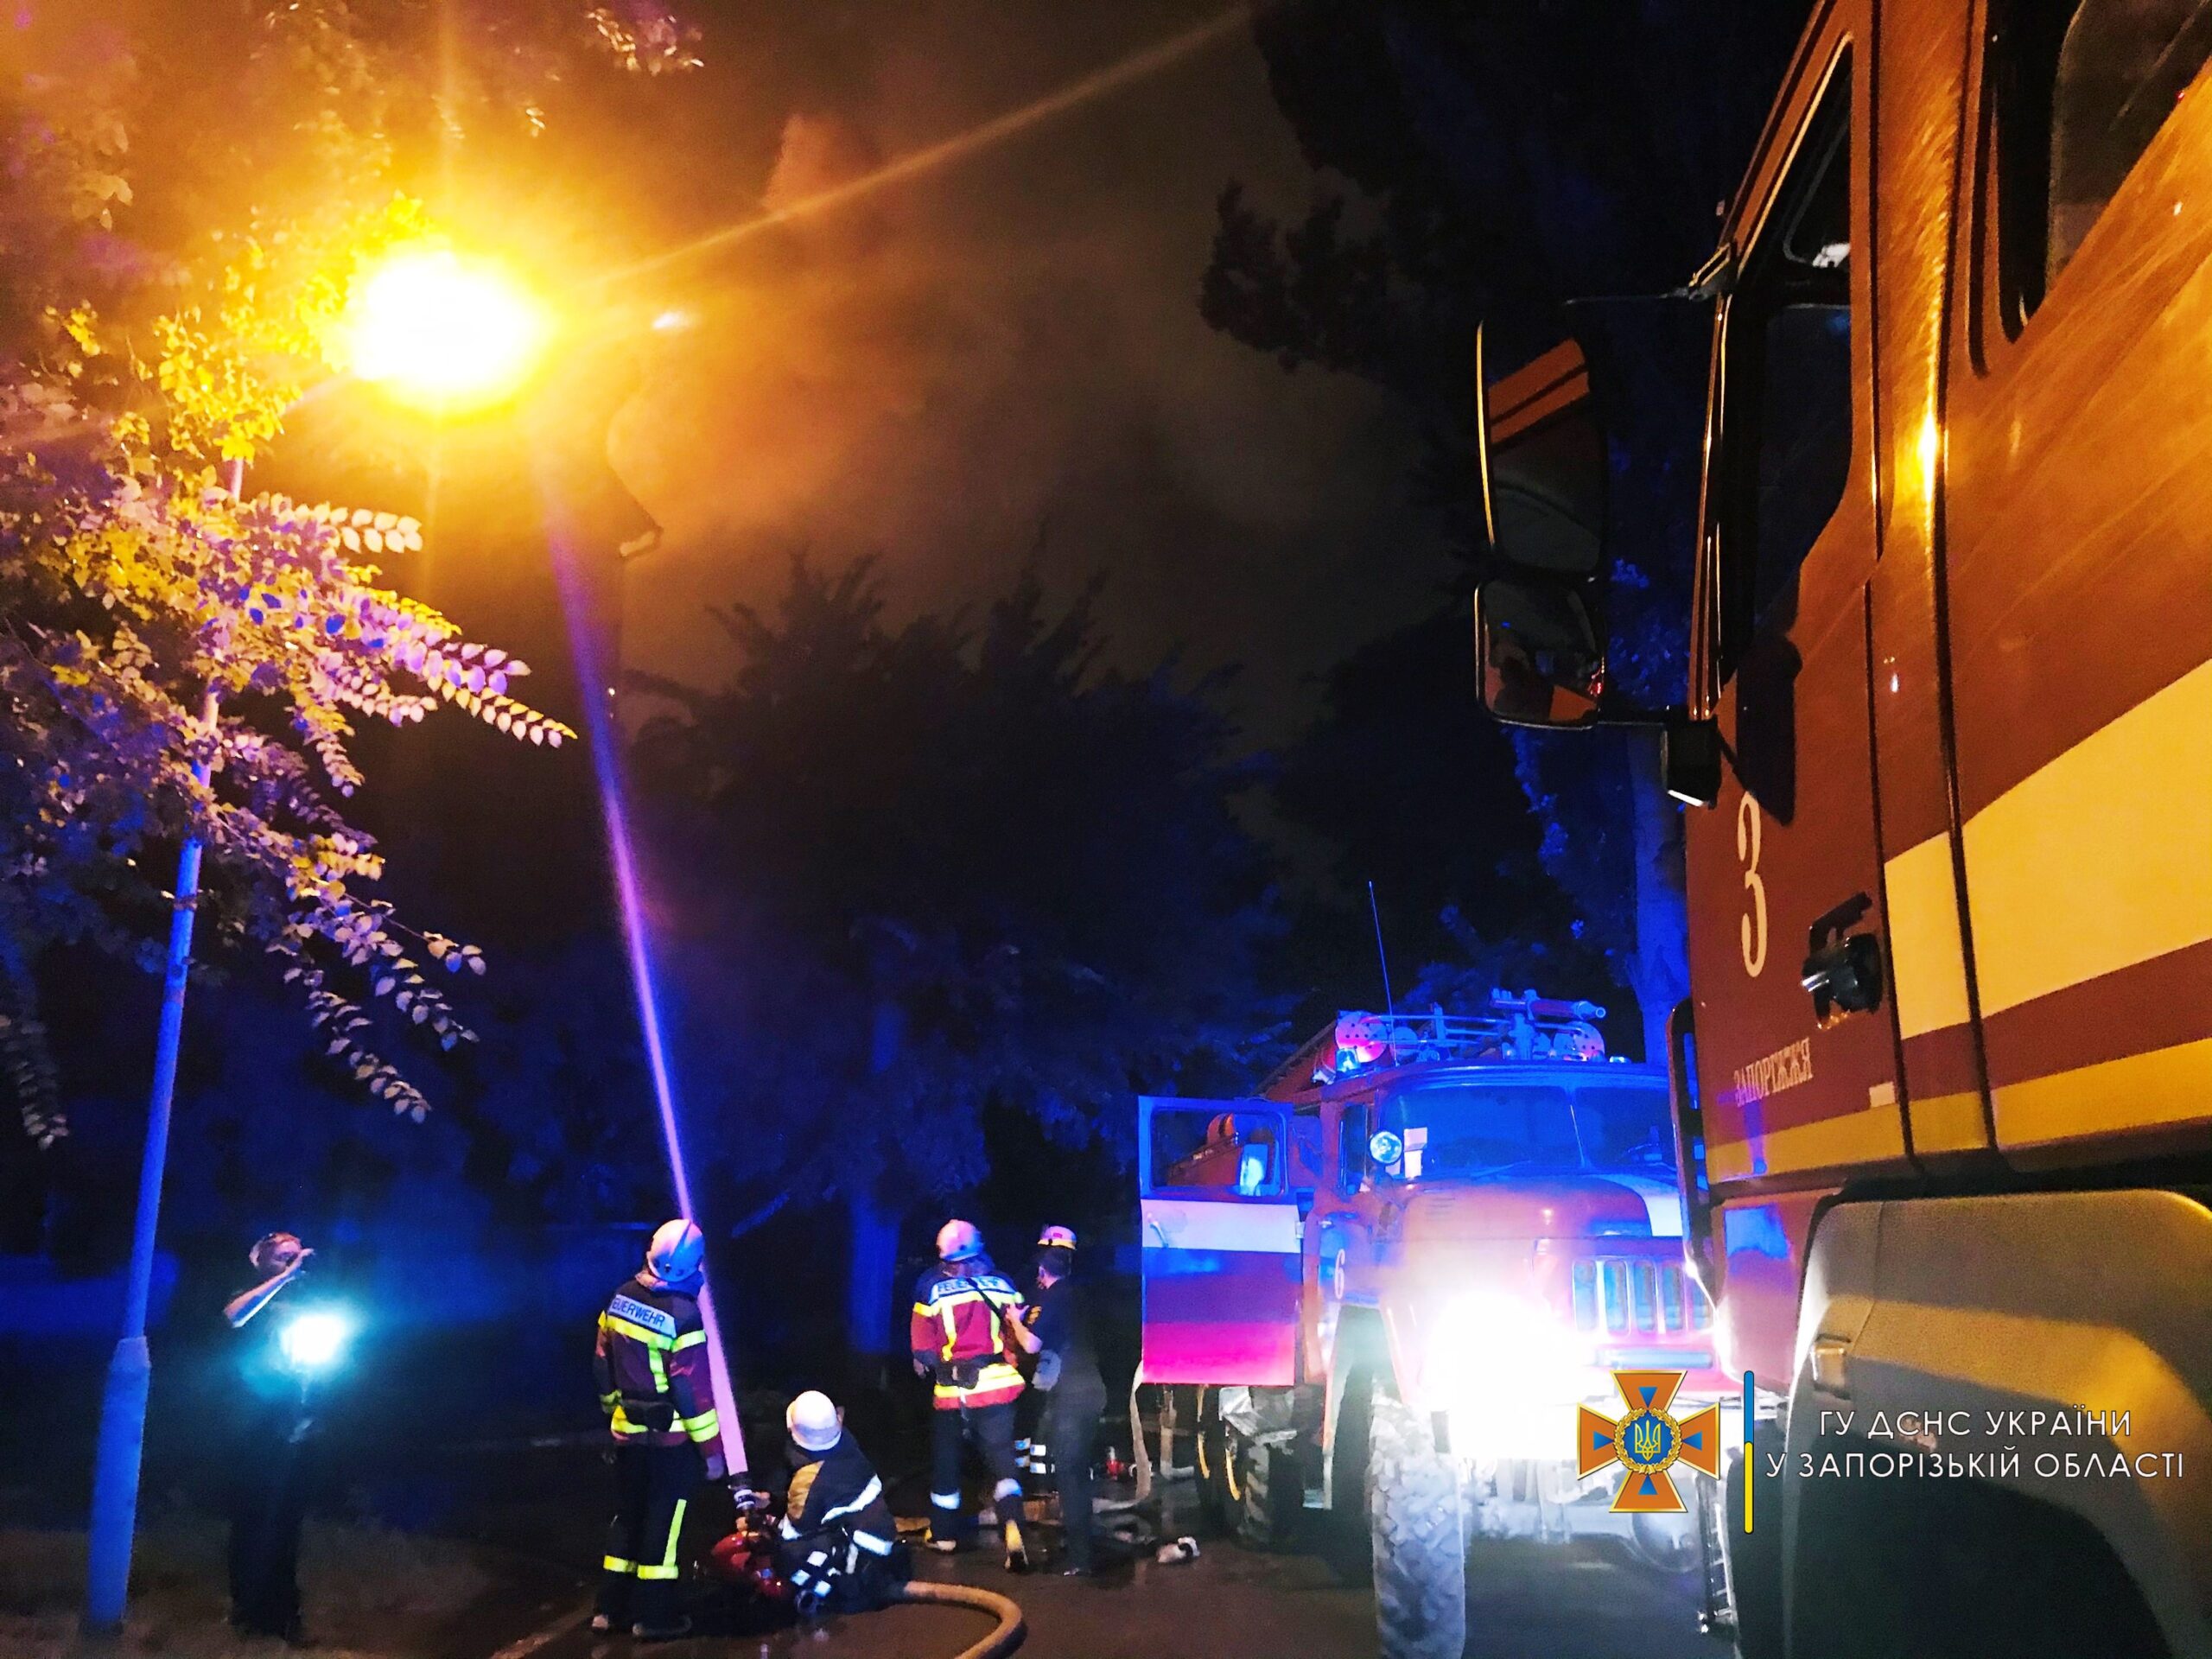 Появились подробности масштабного пожара в многоэтажке в центре Запорожья: жильцов экстренно эвакуировали (ВИДЕО, ФОТО)